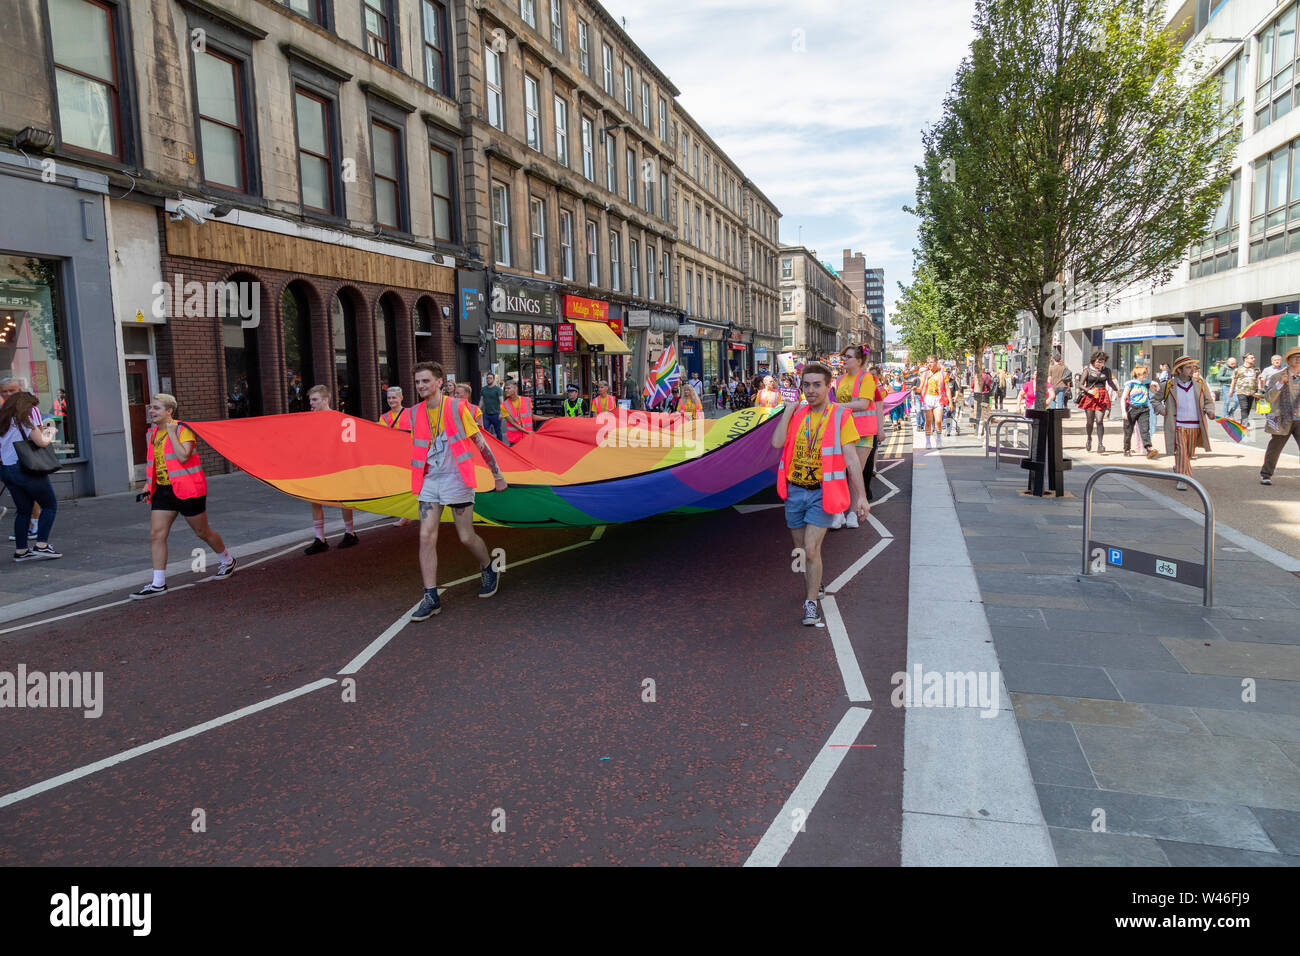 Glasgow, Vereinigtes Königreich. Juli 2019 20. Die erste Mardi Gla LGBT Pride Event startet mit einem Marsch von der Glasgow Kelvingrove Park auf dem George Square. Danach ein Line up der Unterhaltung ist am Mardi Gla Festival Hub in der Universität Strathclyde student union geplant. Stockfoto